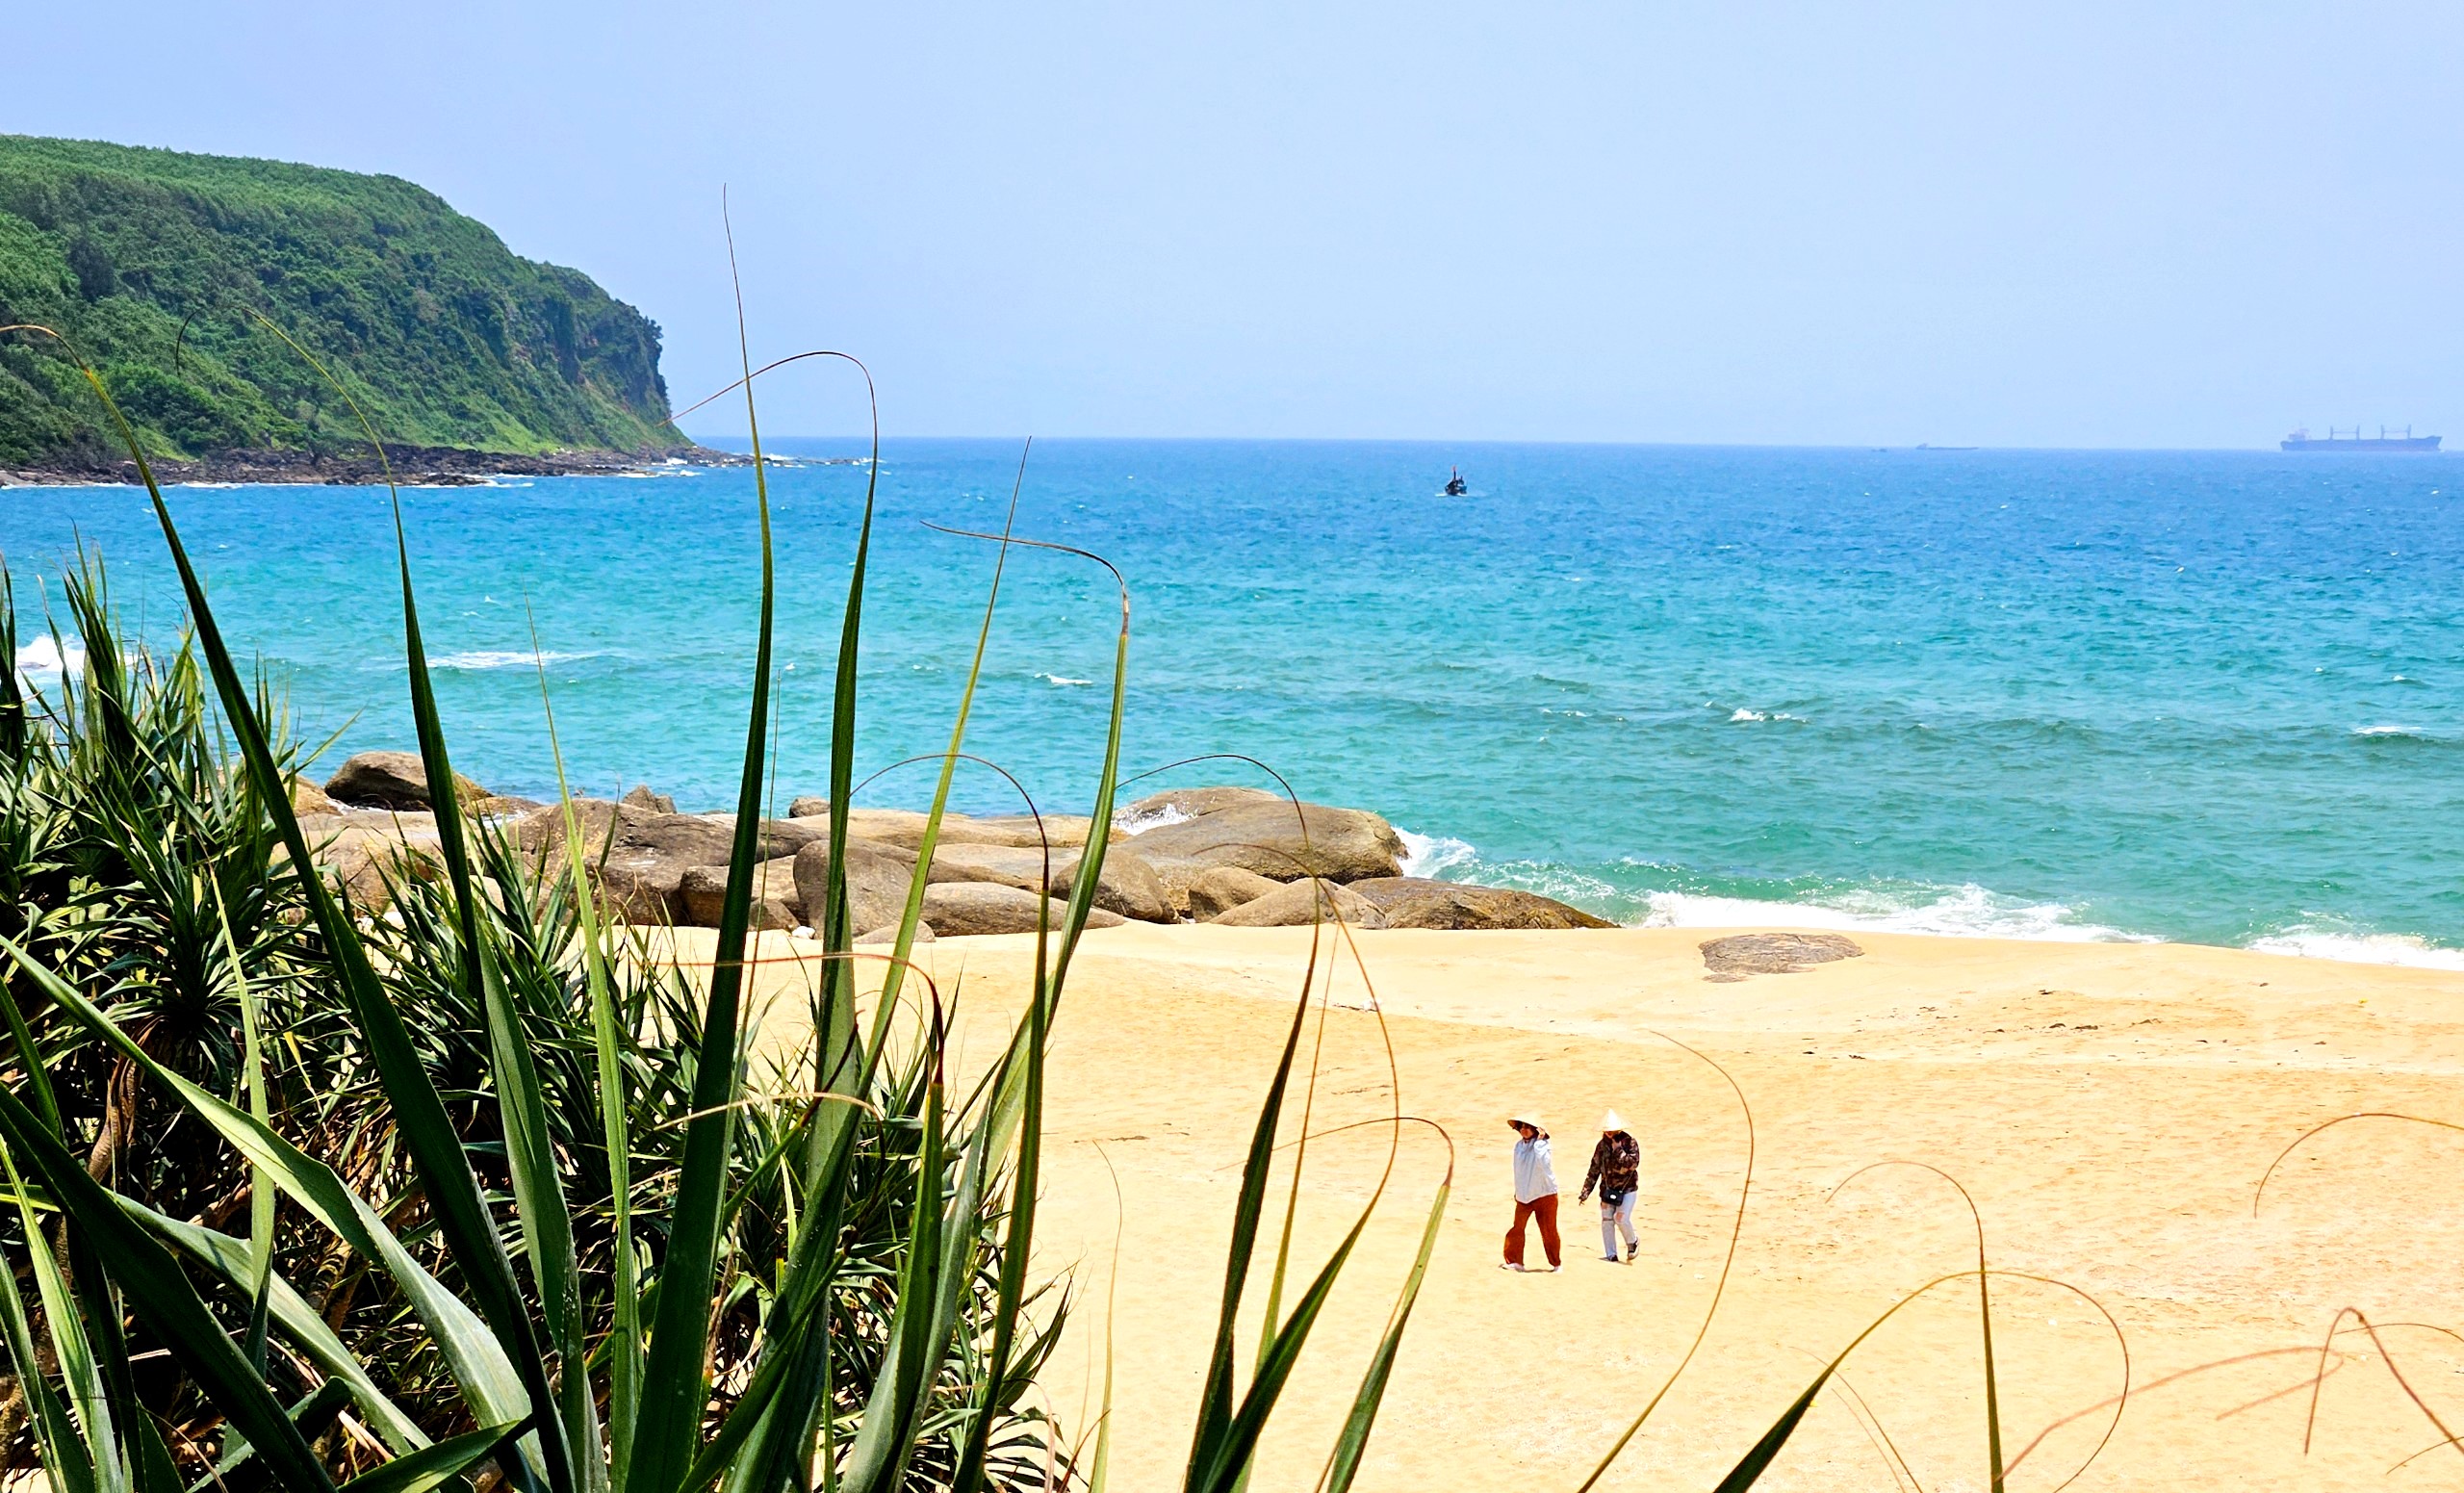 Đoàn đến tham quan bãi biển Hòn Cóc thuộc vịnh Dung Quất, xã Bình Thuận, huyện Bình Sơn – Nơi còn giữ nguyên vẻ đẹp hoang sơ, với bãi cát vàng và làn nước biển trong xanh biếc-